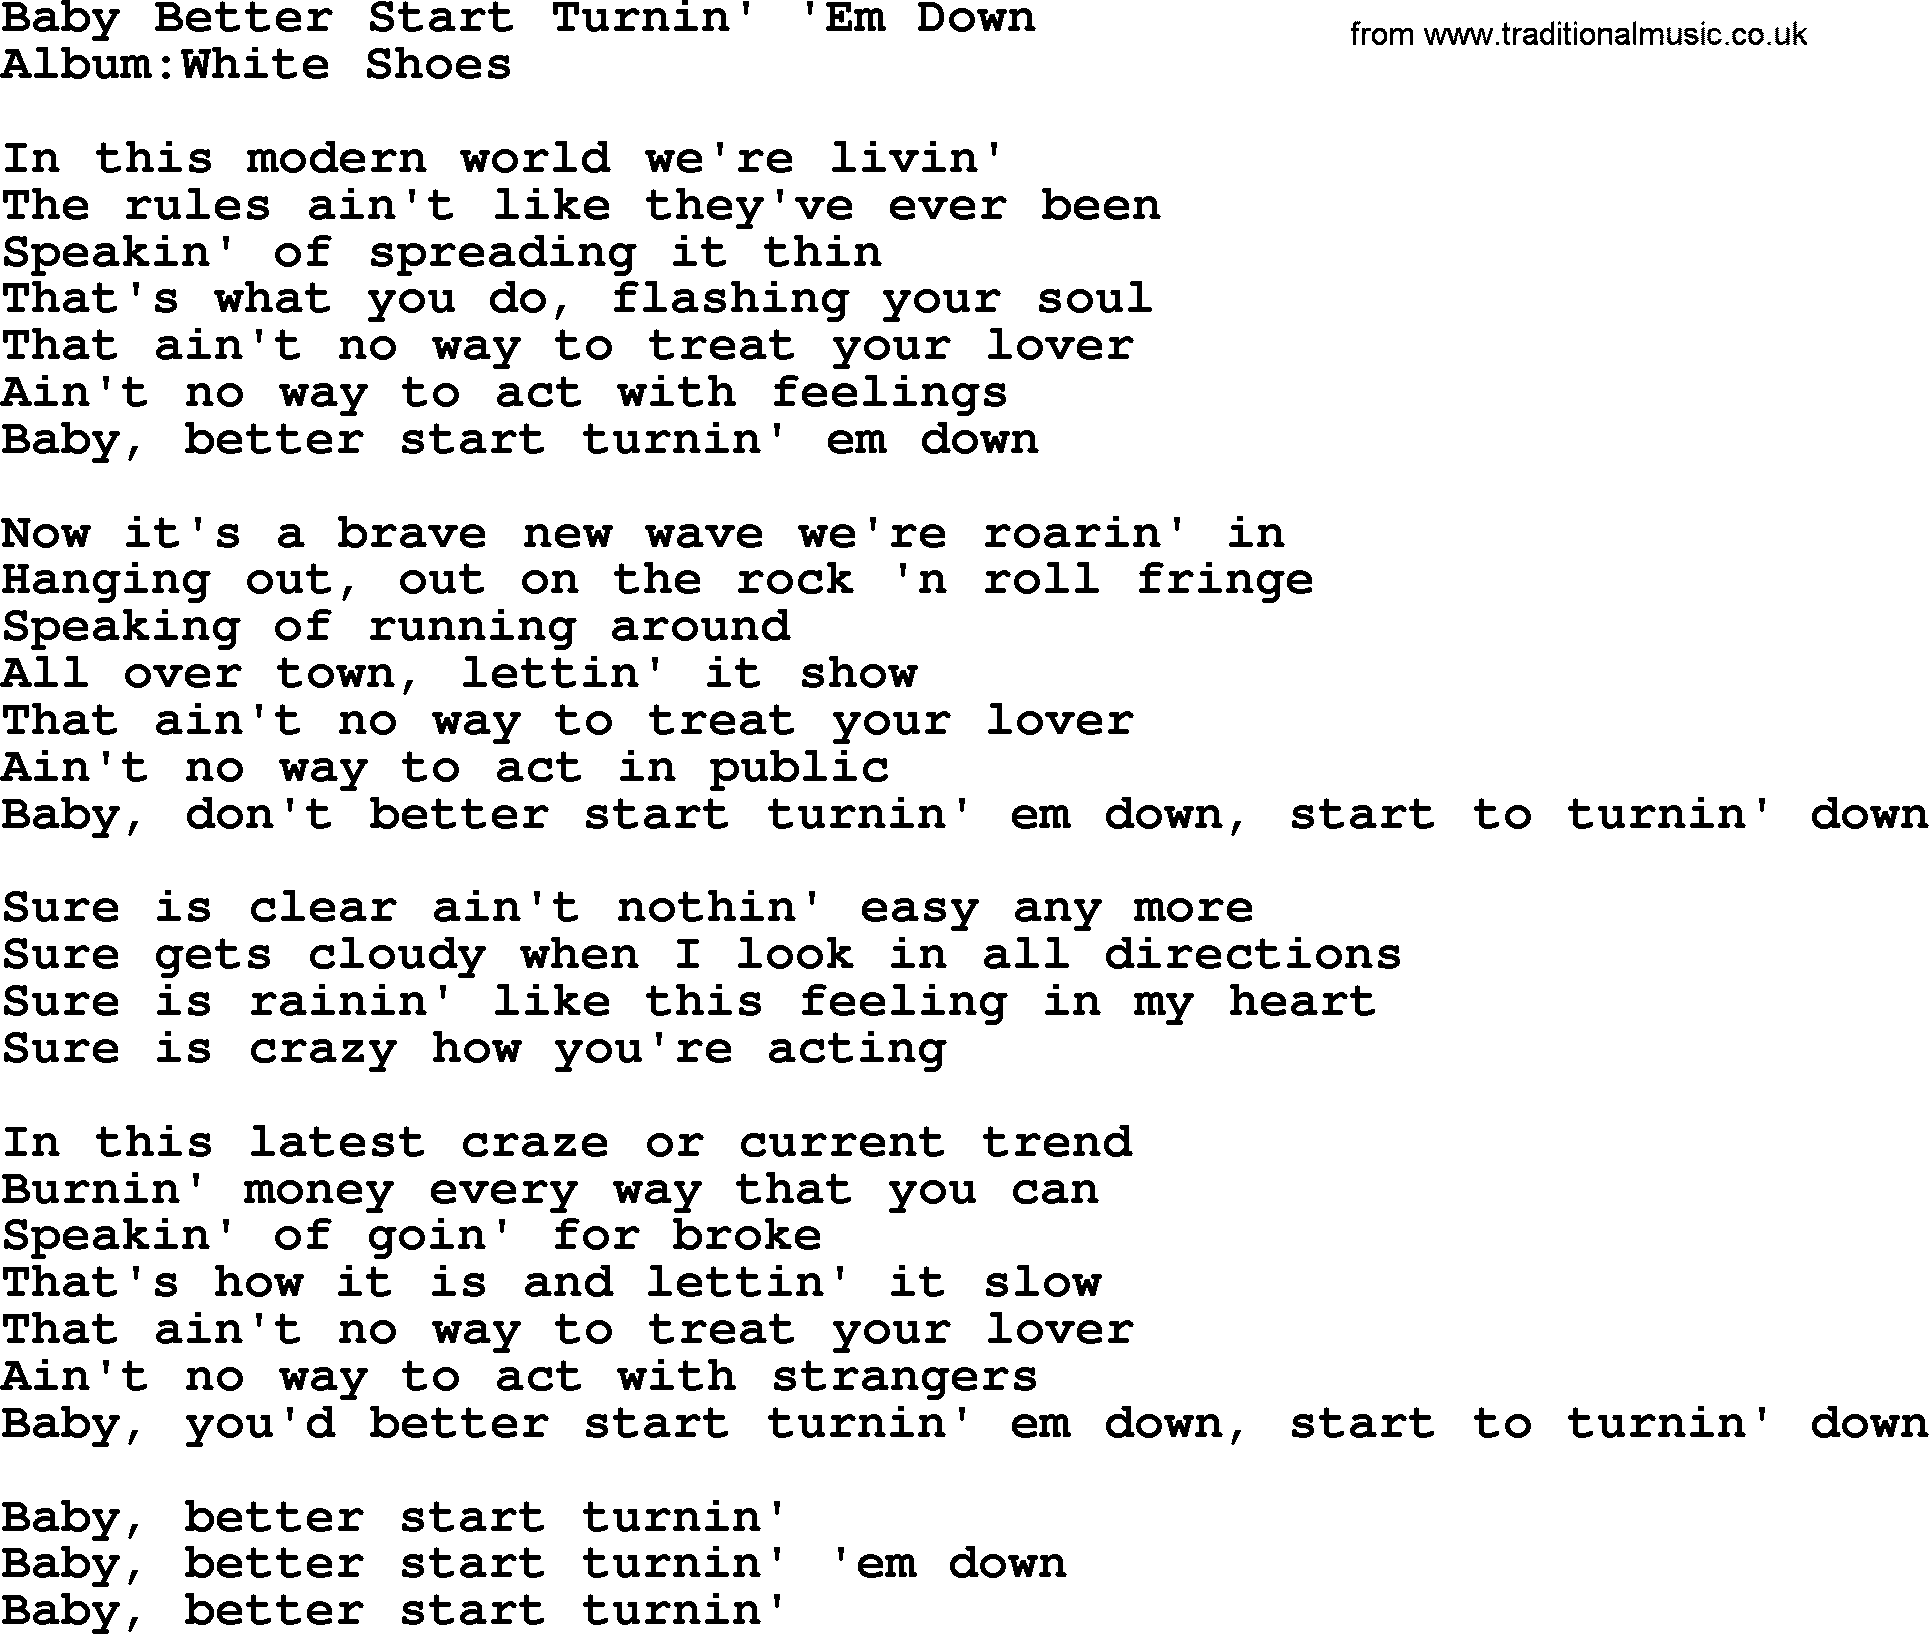 Emmylou Harris song: Baby Better Start Turnin' 'Em Down lyrics